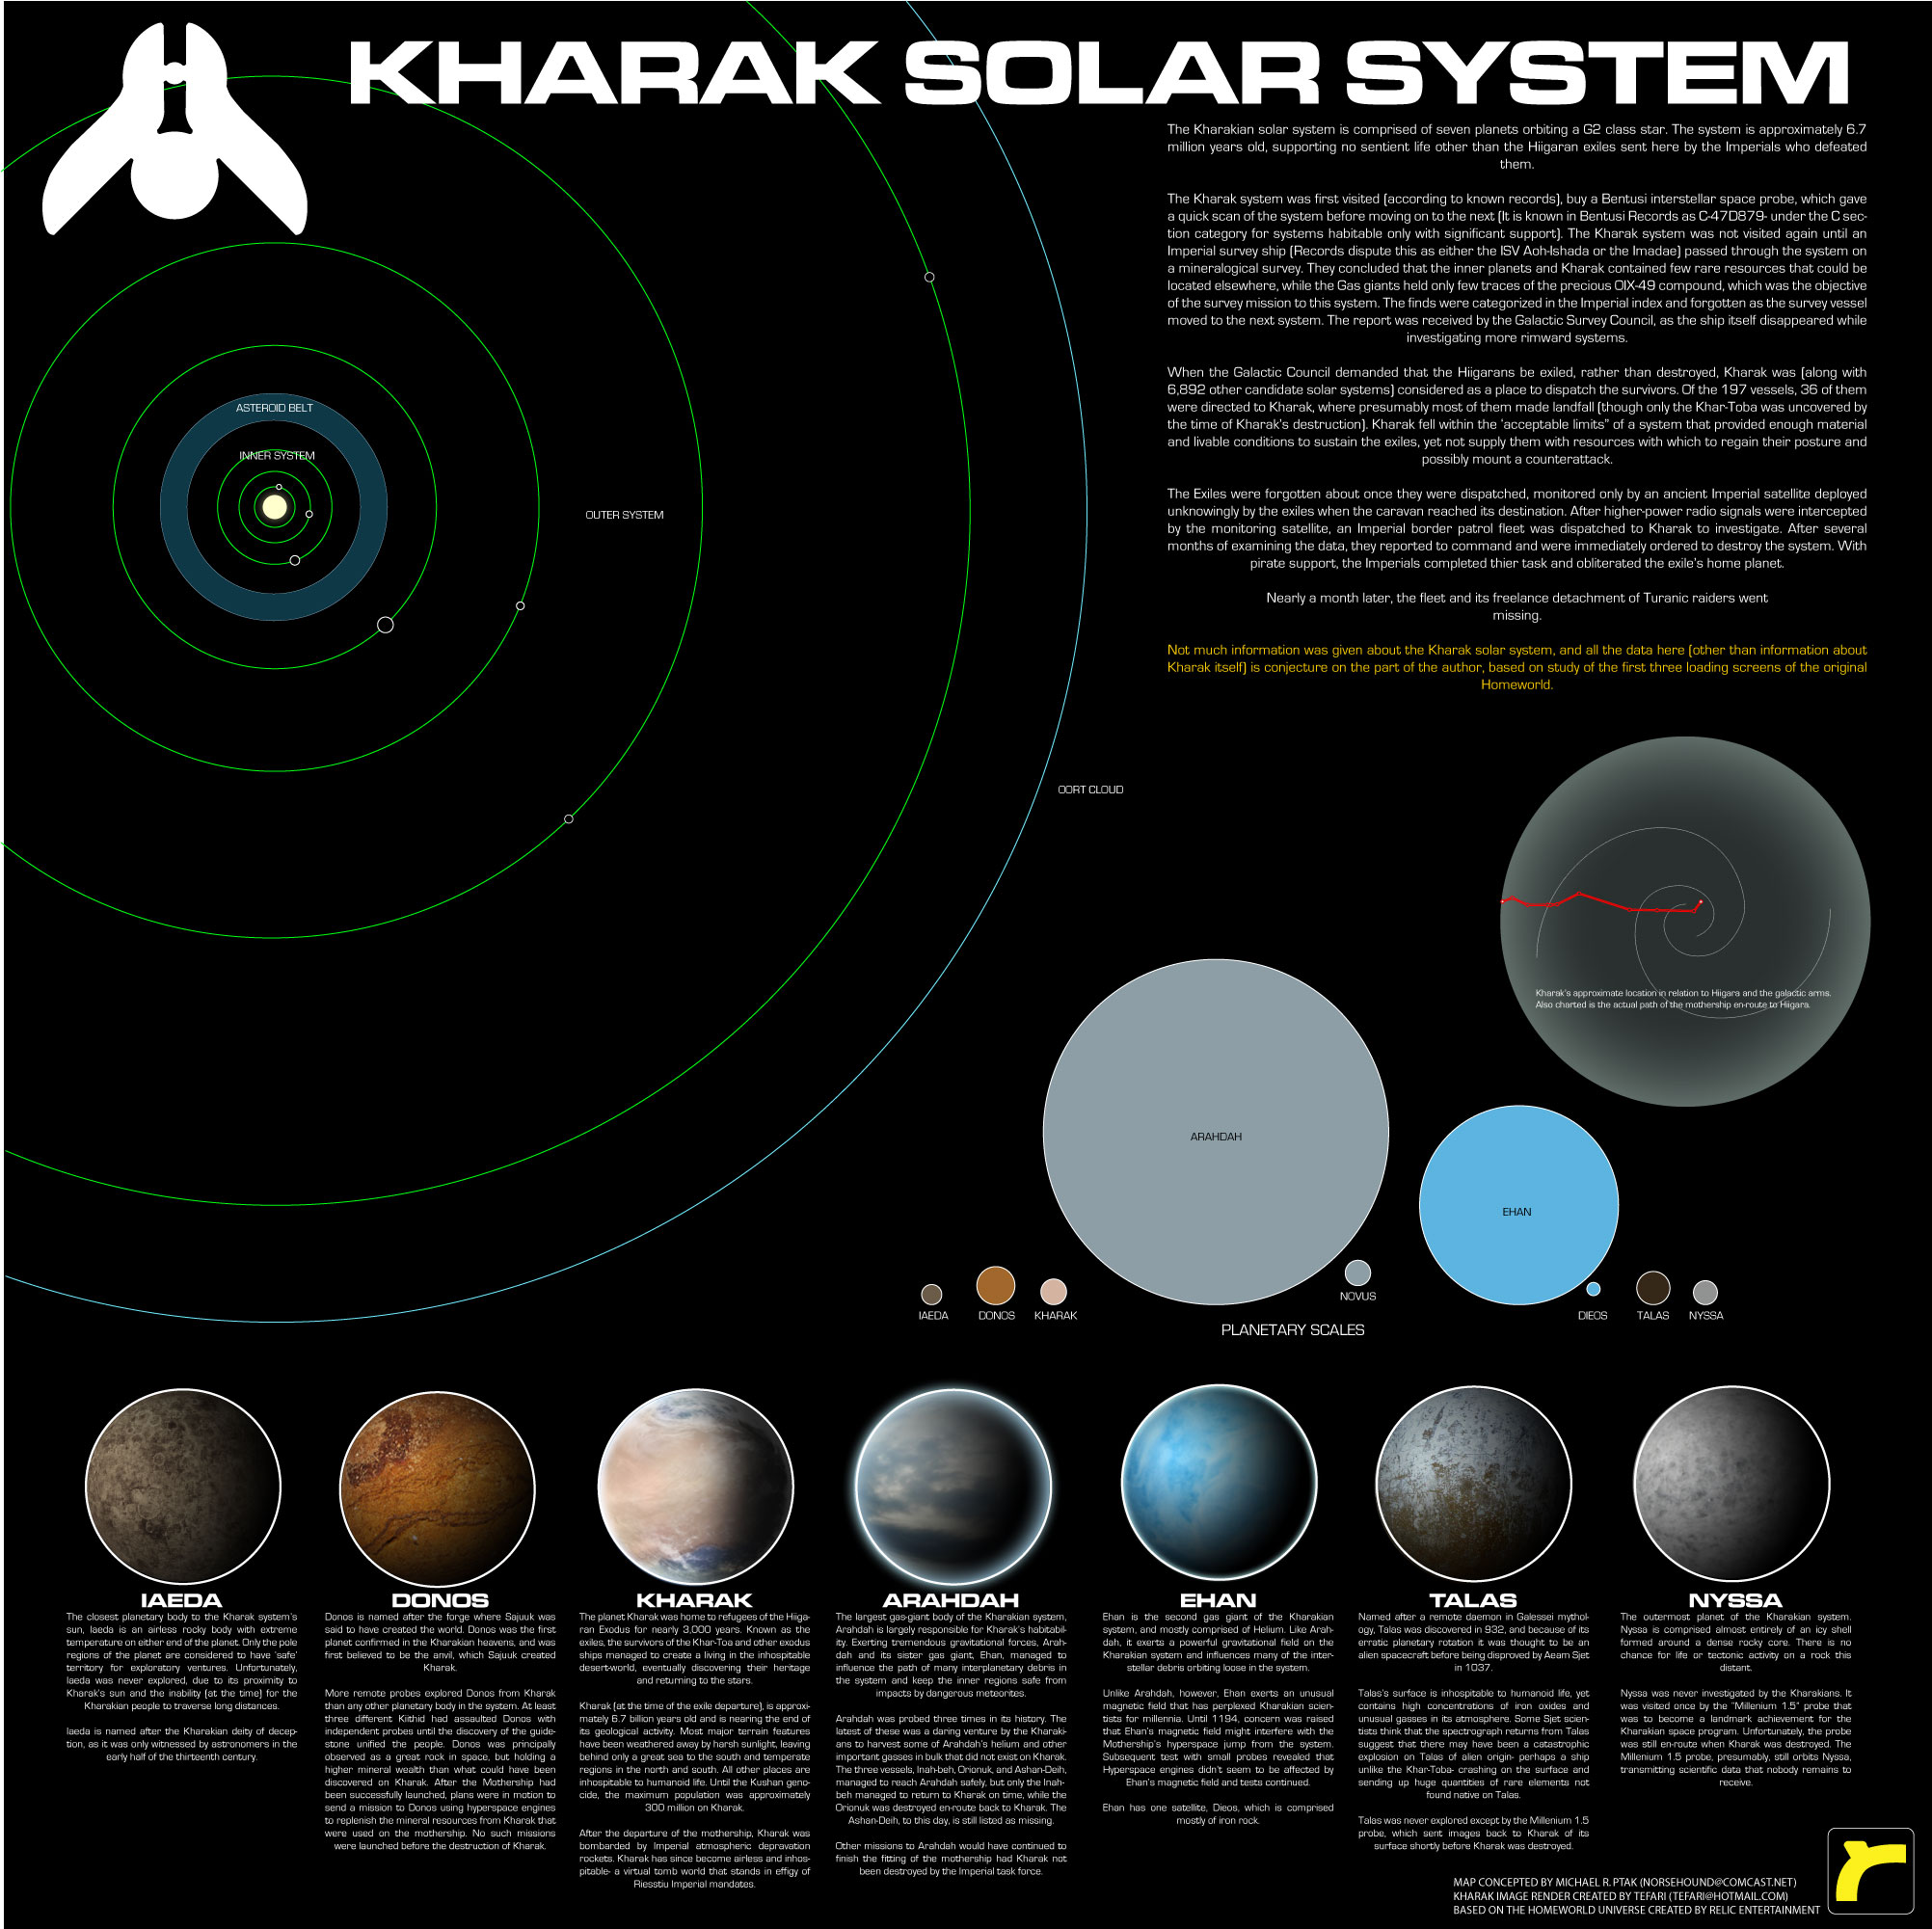 http://fc04.deviantart.net/fs21/f/2007/264/5/e/Kharak_System_Map_by_Norsehound.jpg